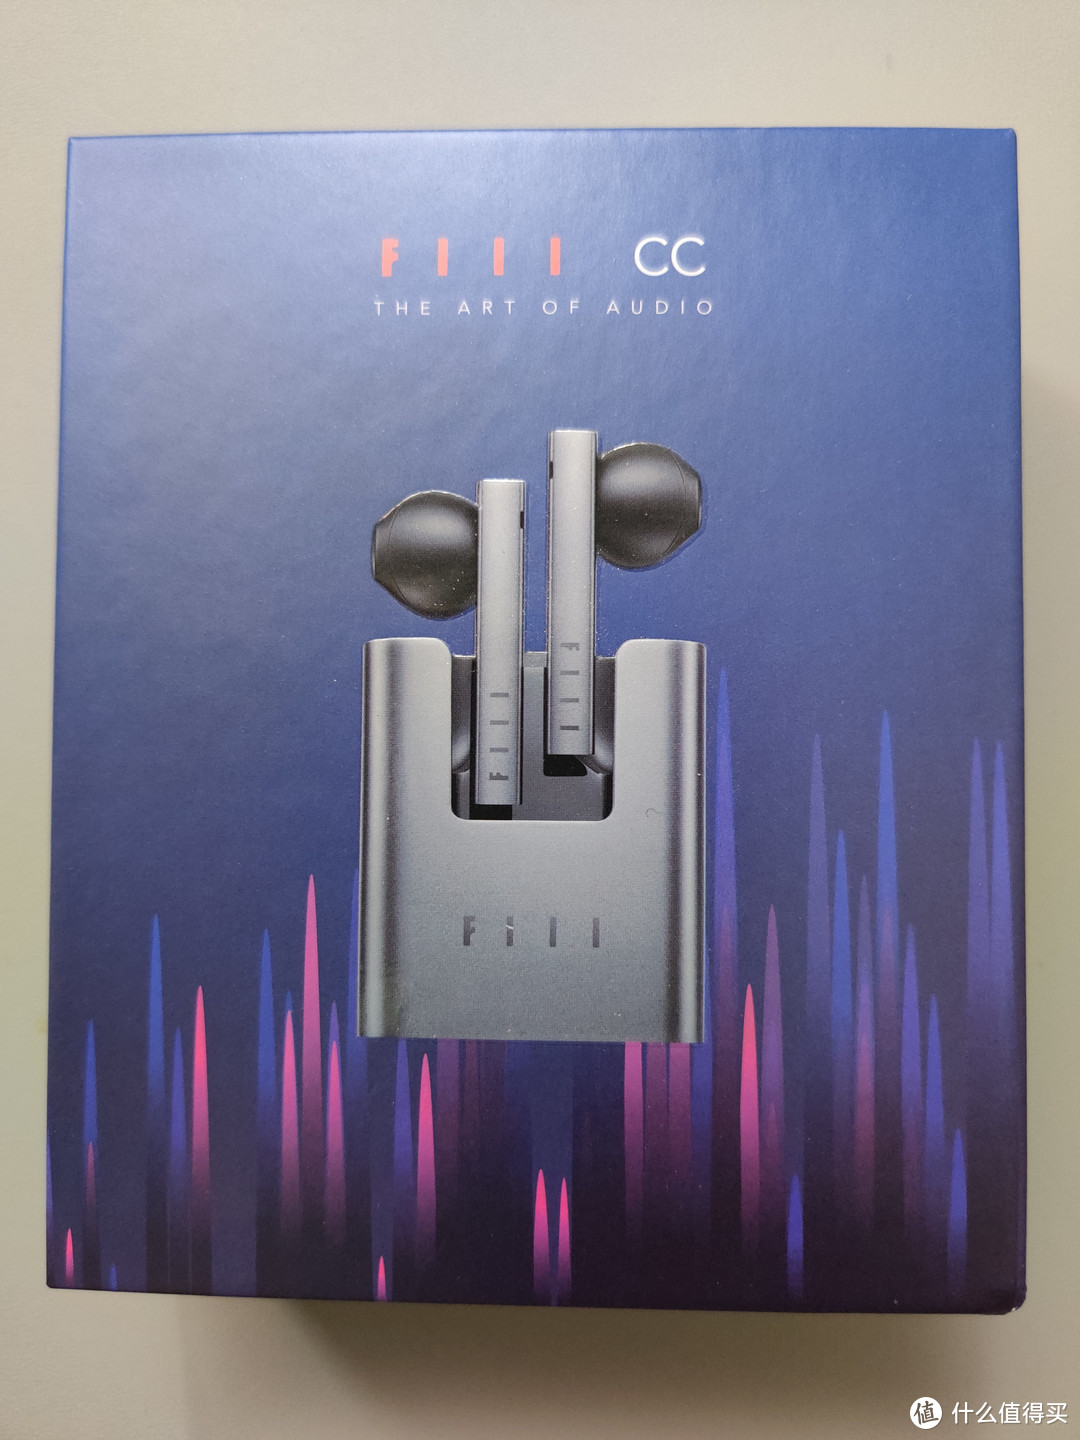 设计与品质兼具——FIIL CC蓝牙耳机众测报告